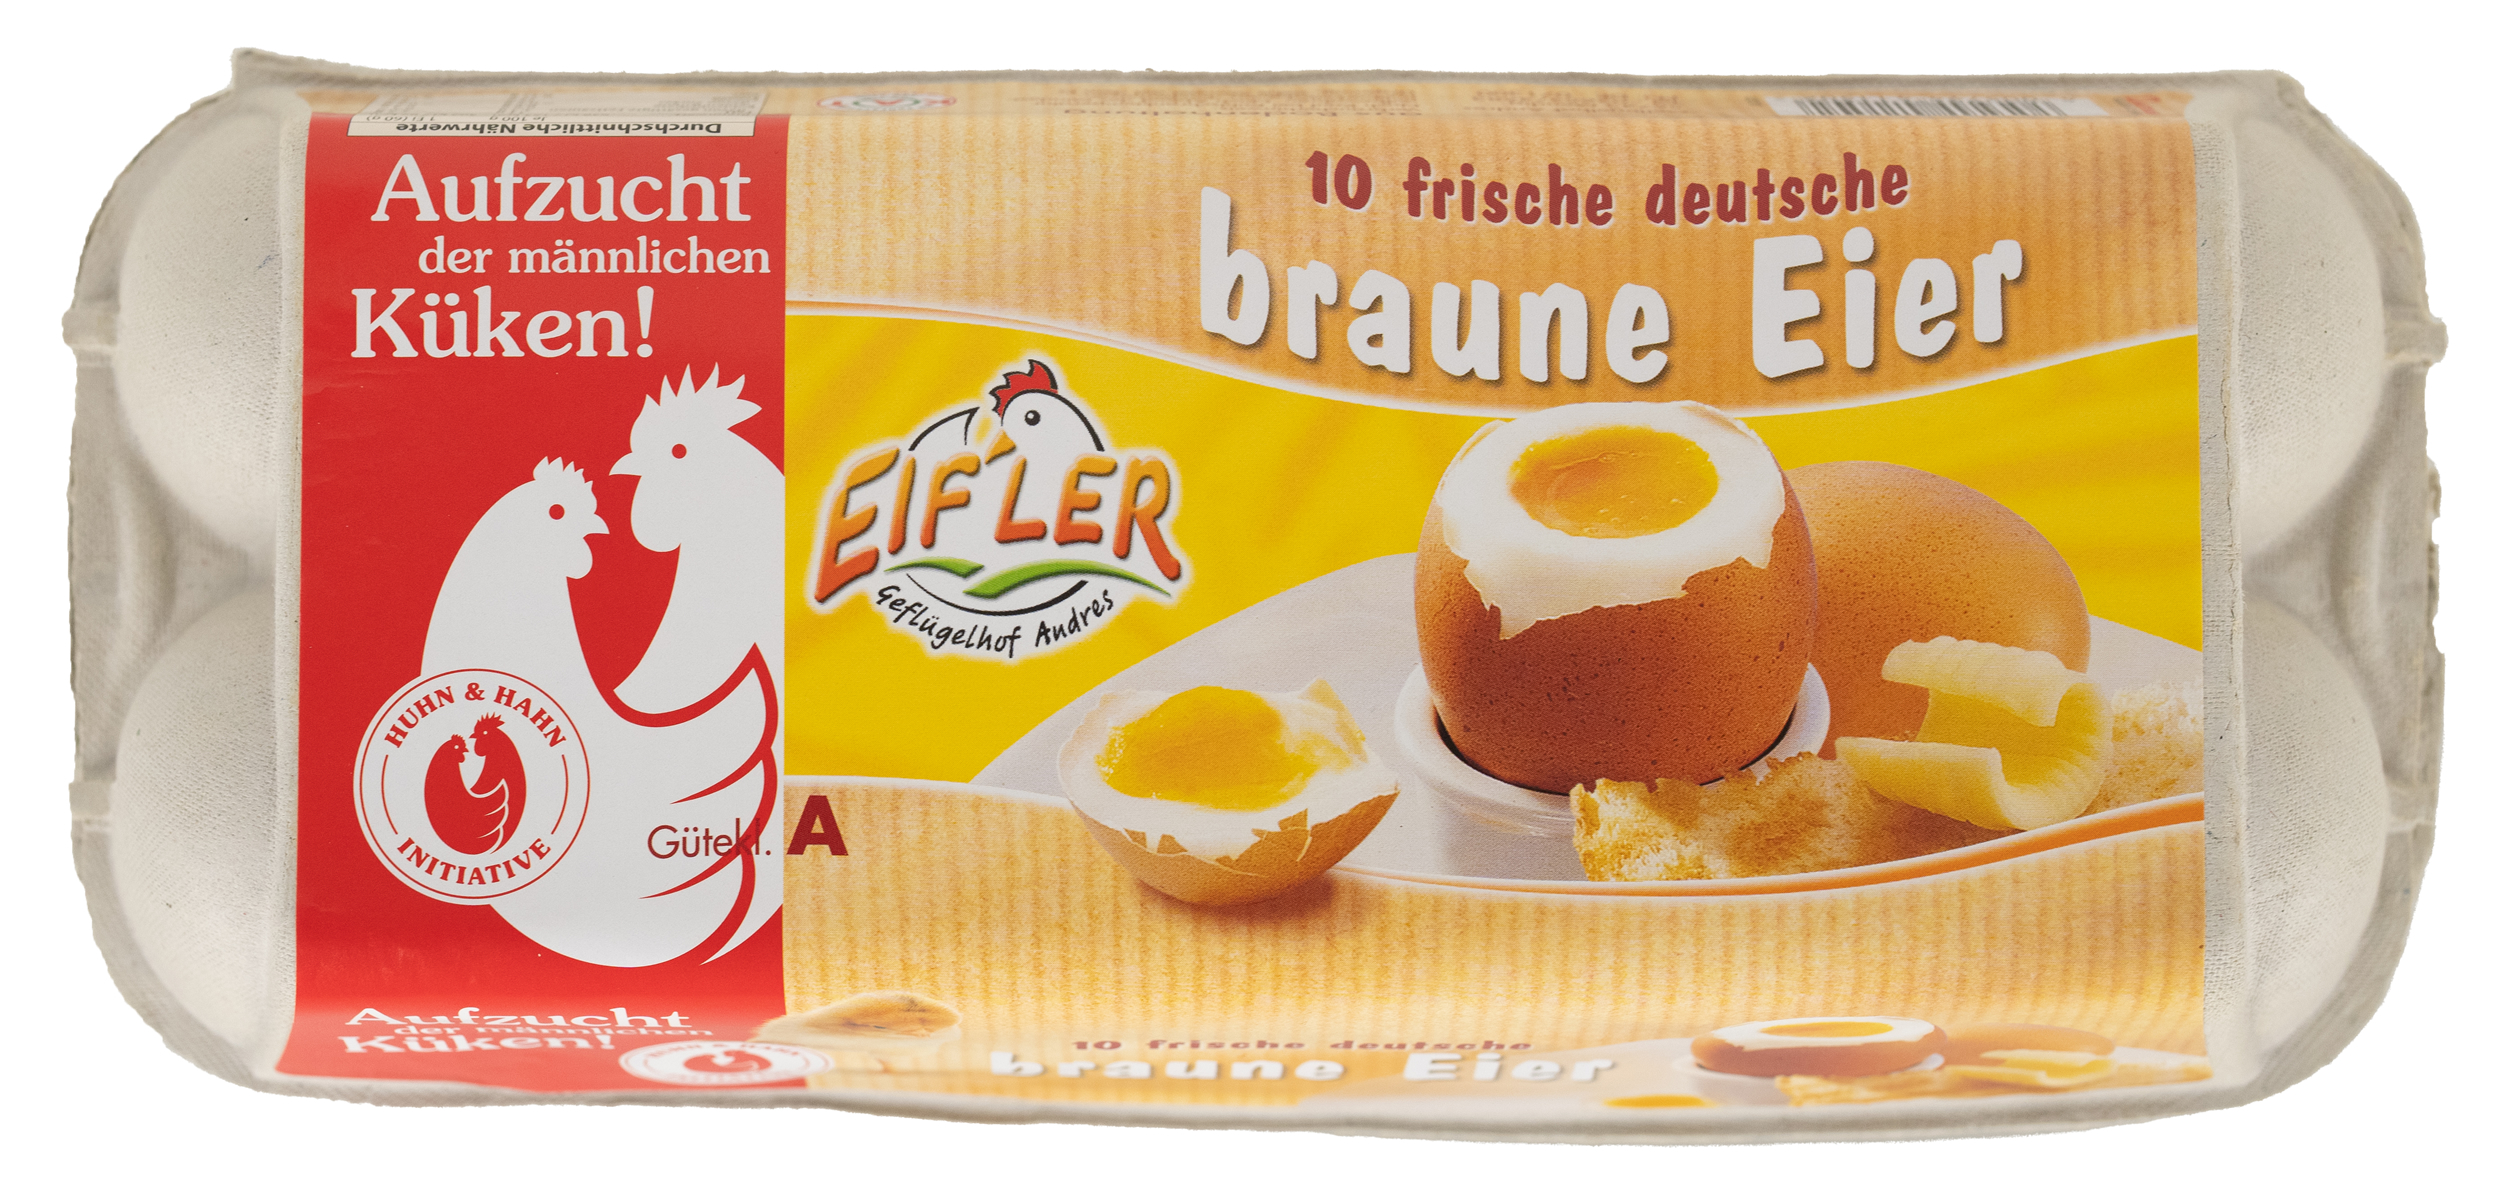 10 frische deutsche braune Eier // Geflügelhof Andres Mendig